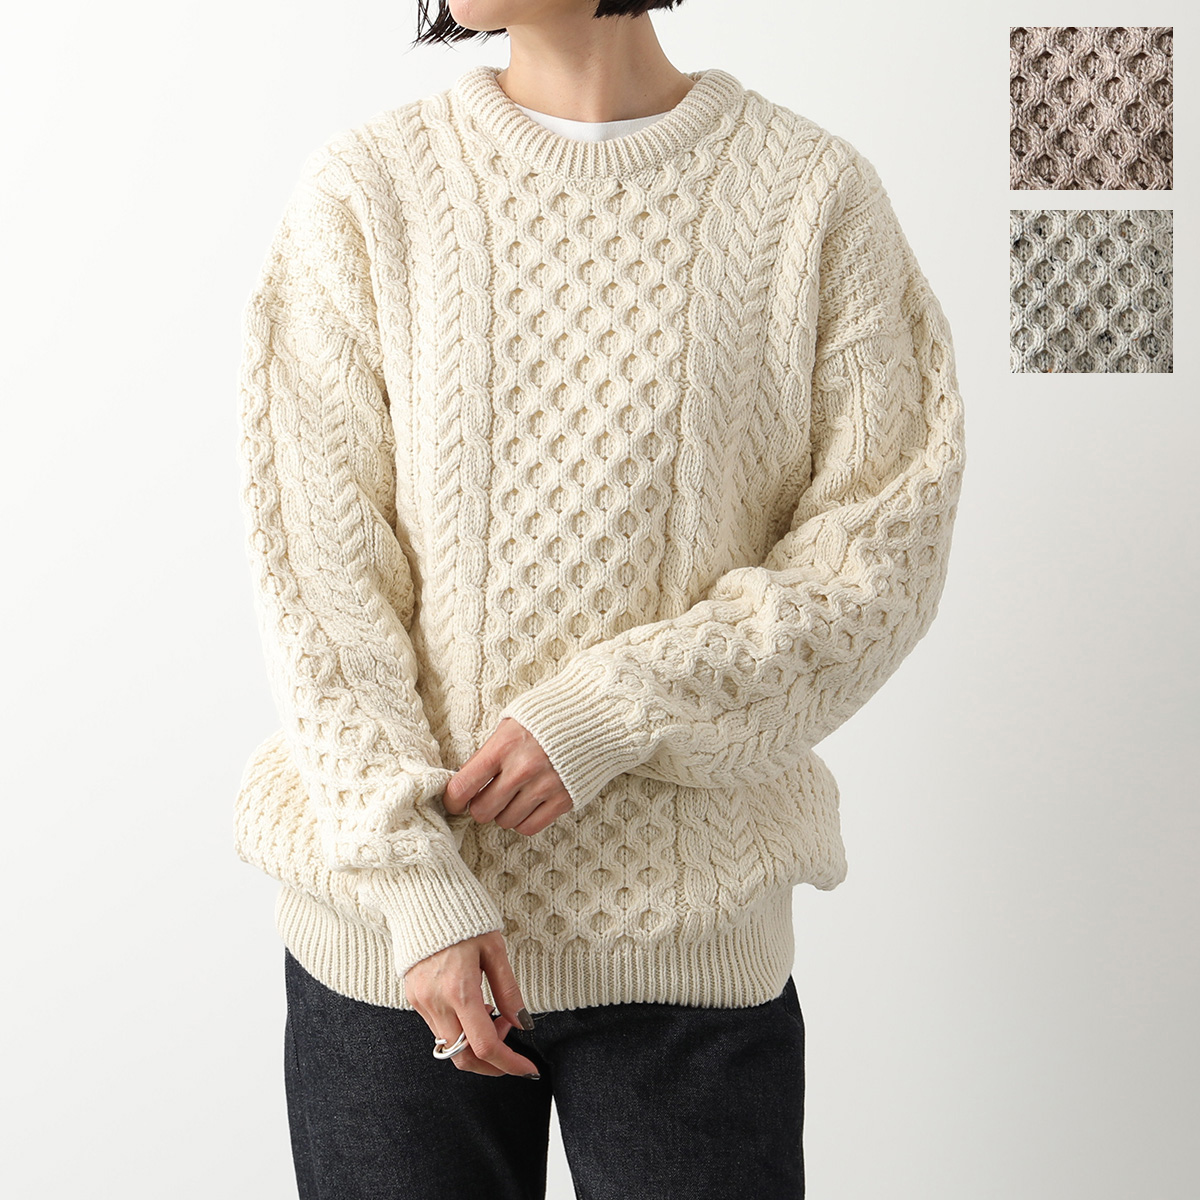 ❤️安いストア❤️ アランウーレンミルズ セーター B420 Aran sweater メンズ 367 日本 L (日本サイズL相当) 